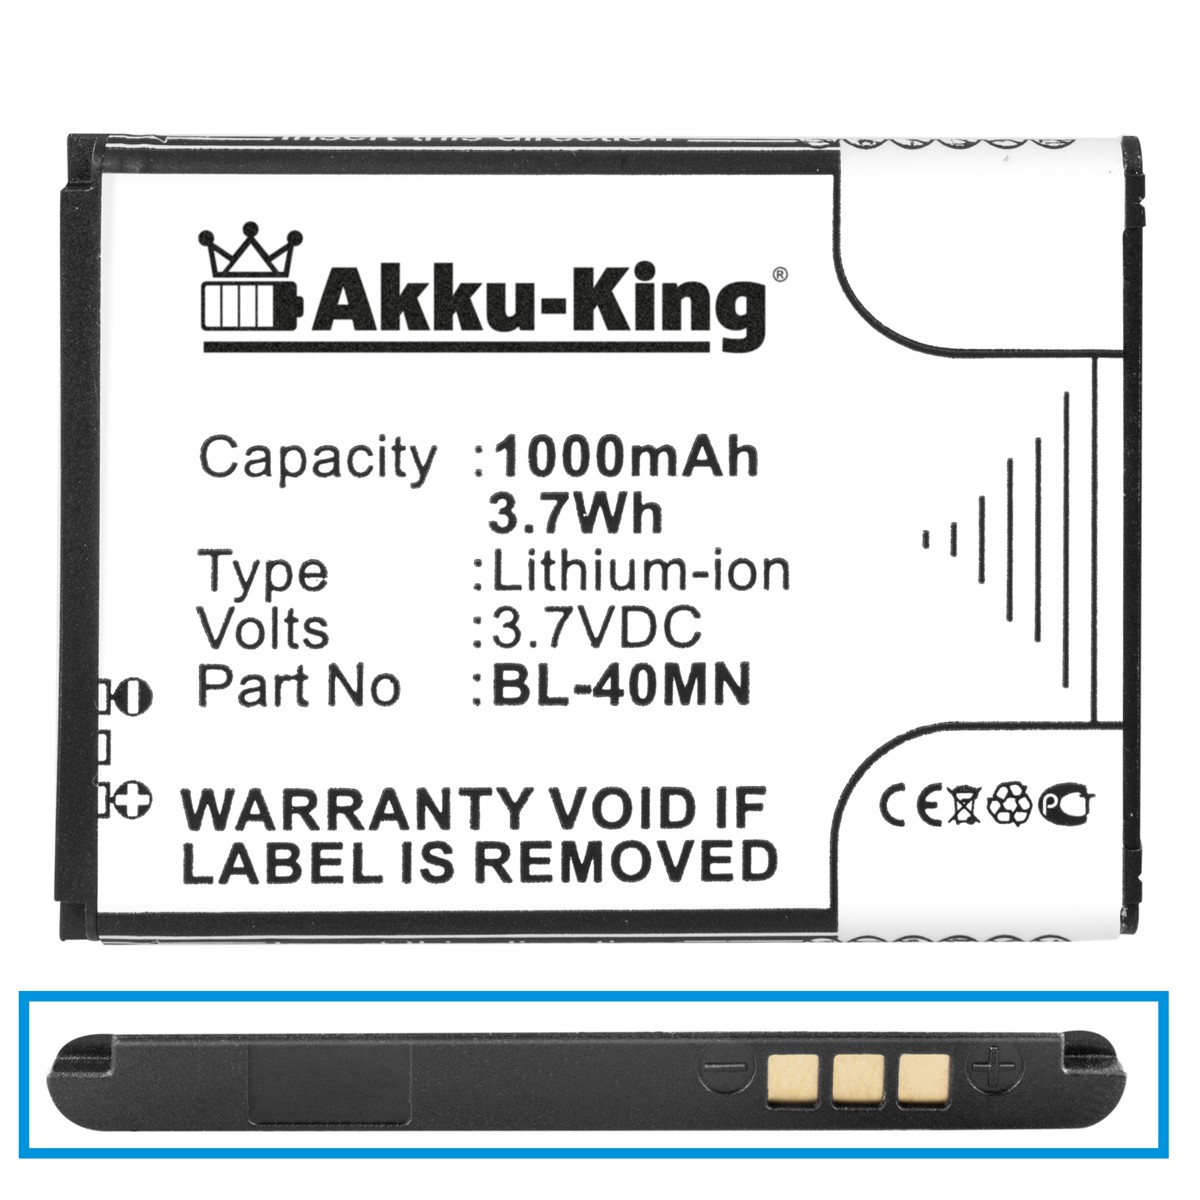 Handy-Akku, kompatibel Li-Ion 1000mAh mit Akku Volt, AKKU-KING LG 3.7 BL-40MN